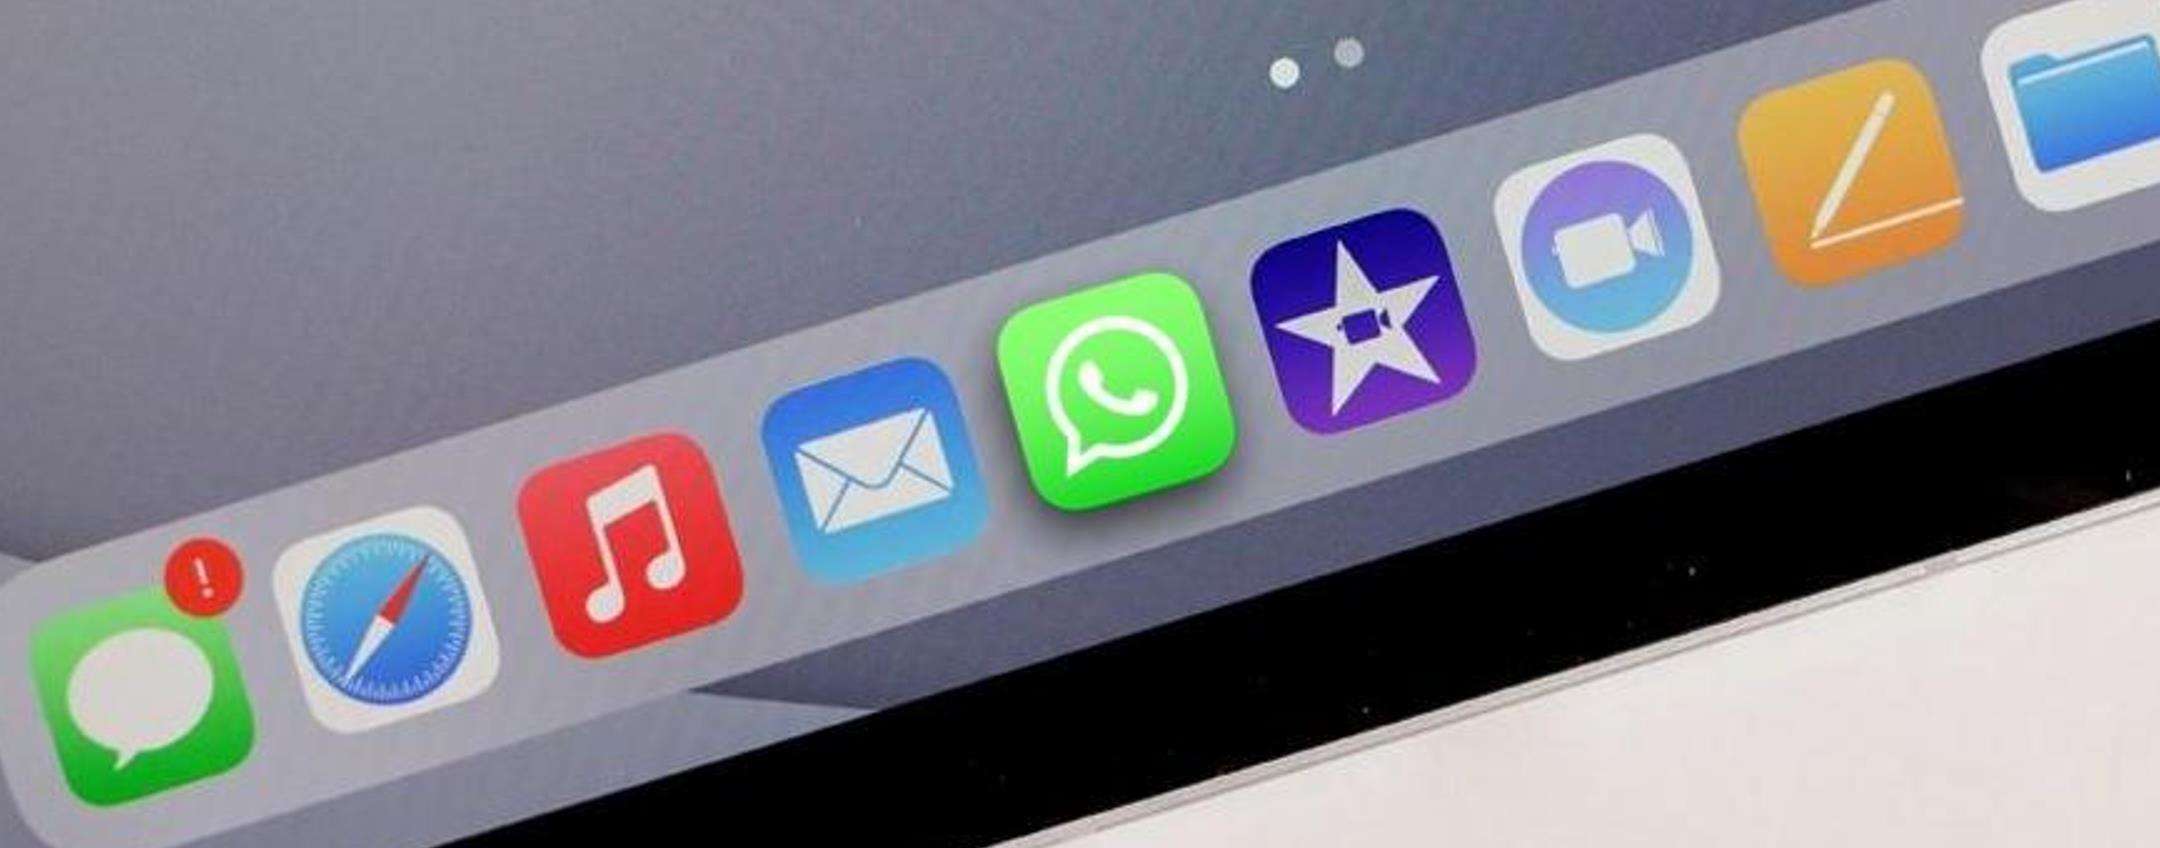 WhatsApp: buone notizie per iPad, cattivi presagi per i backup